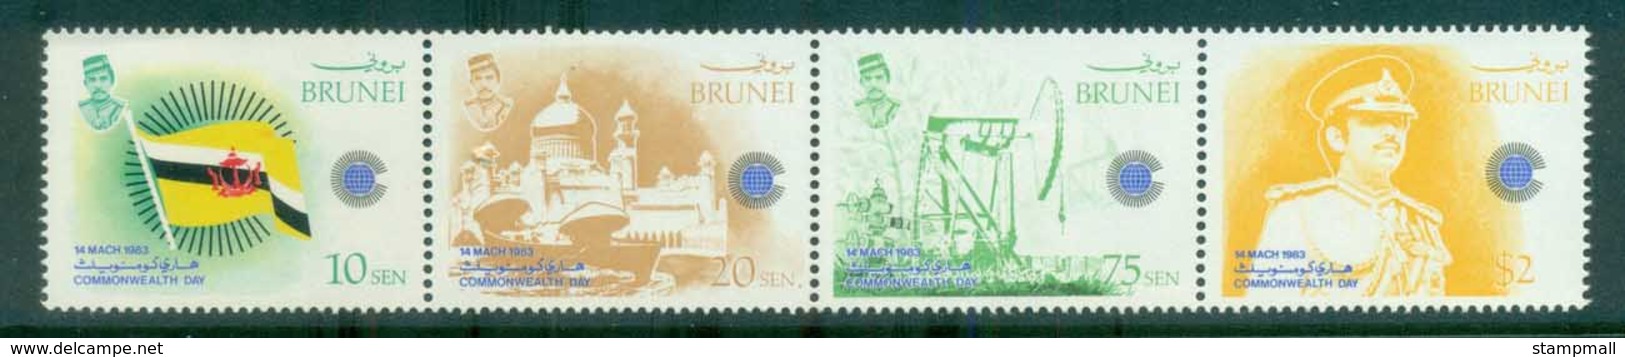 Brunei 1983 Commonwealth Day MUH Lot81662 - Brunei (1984-...)